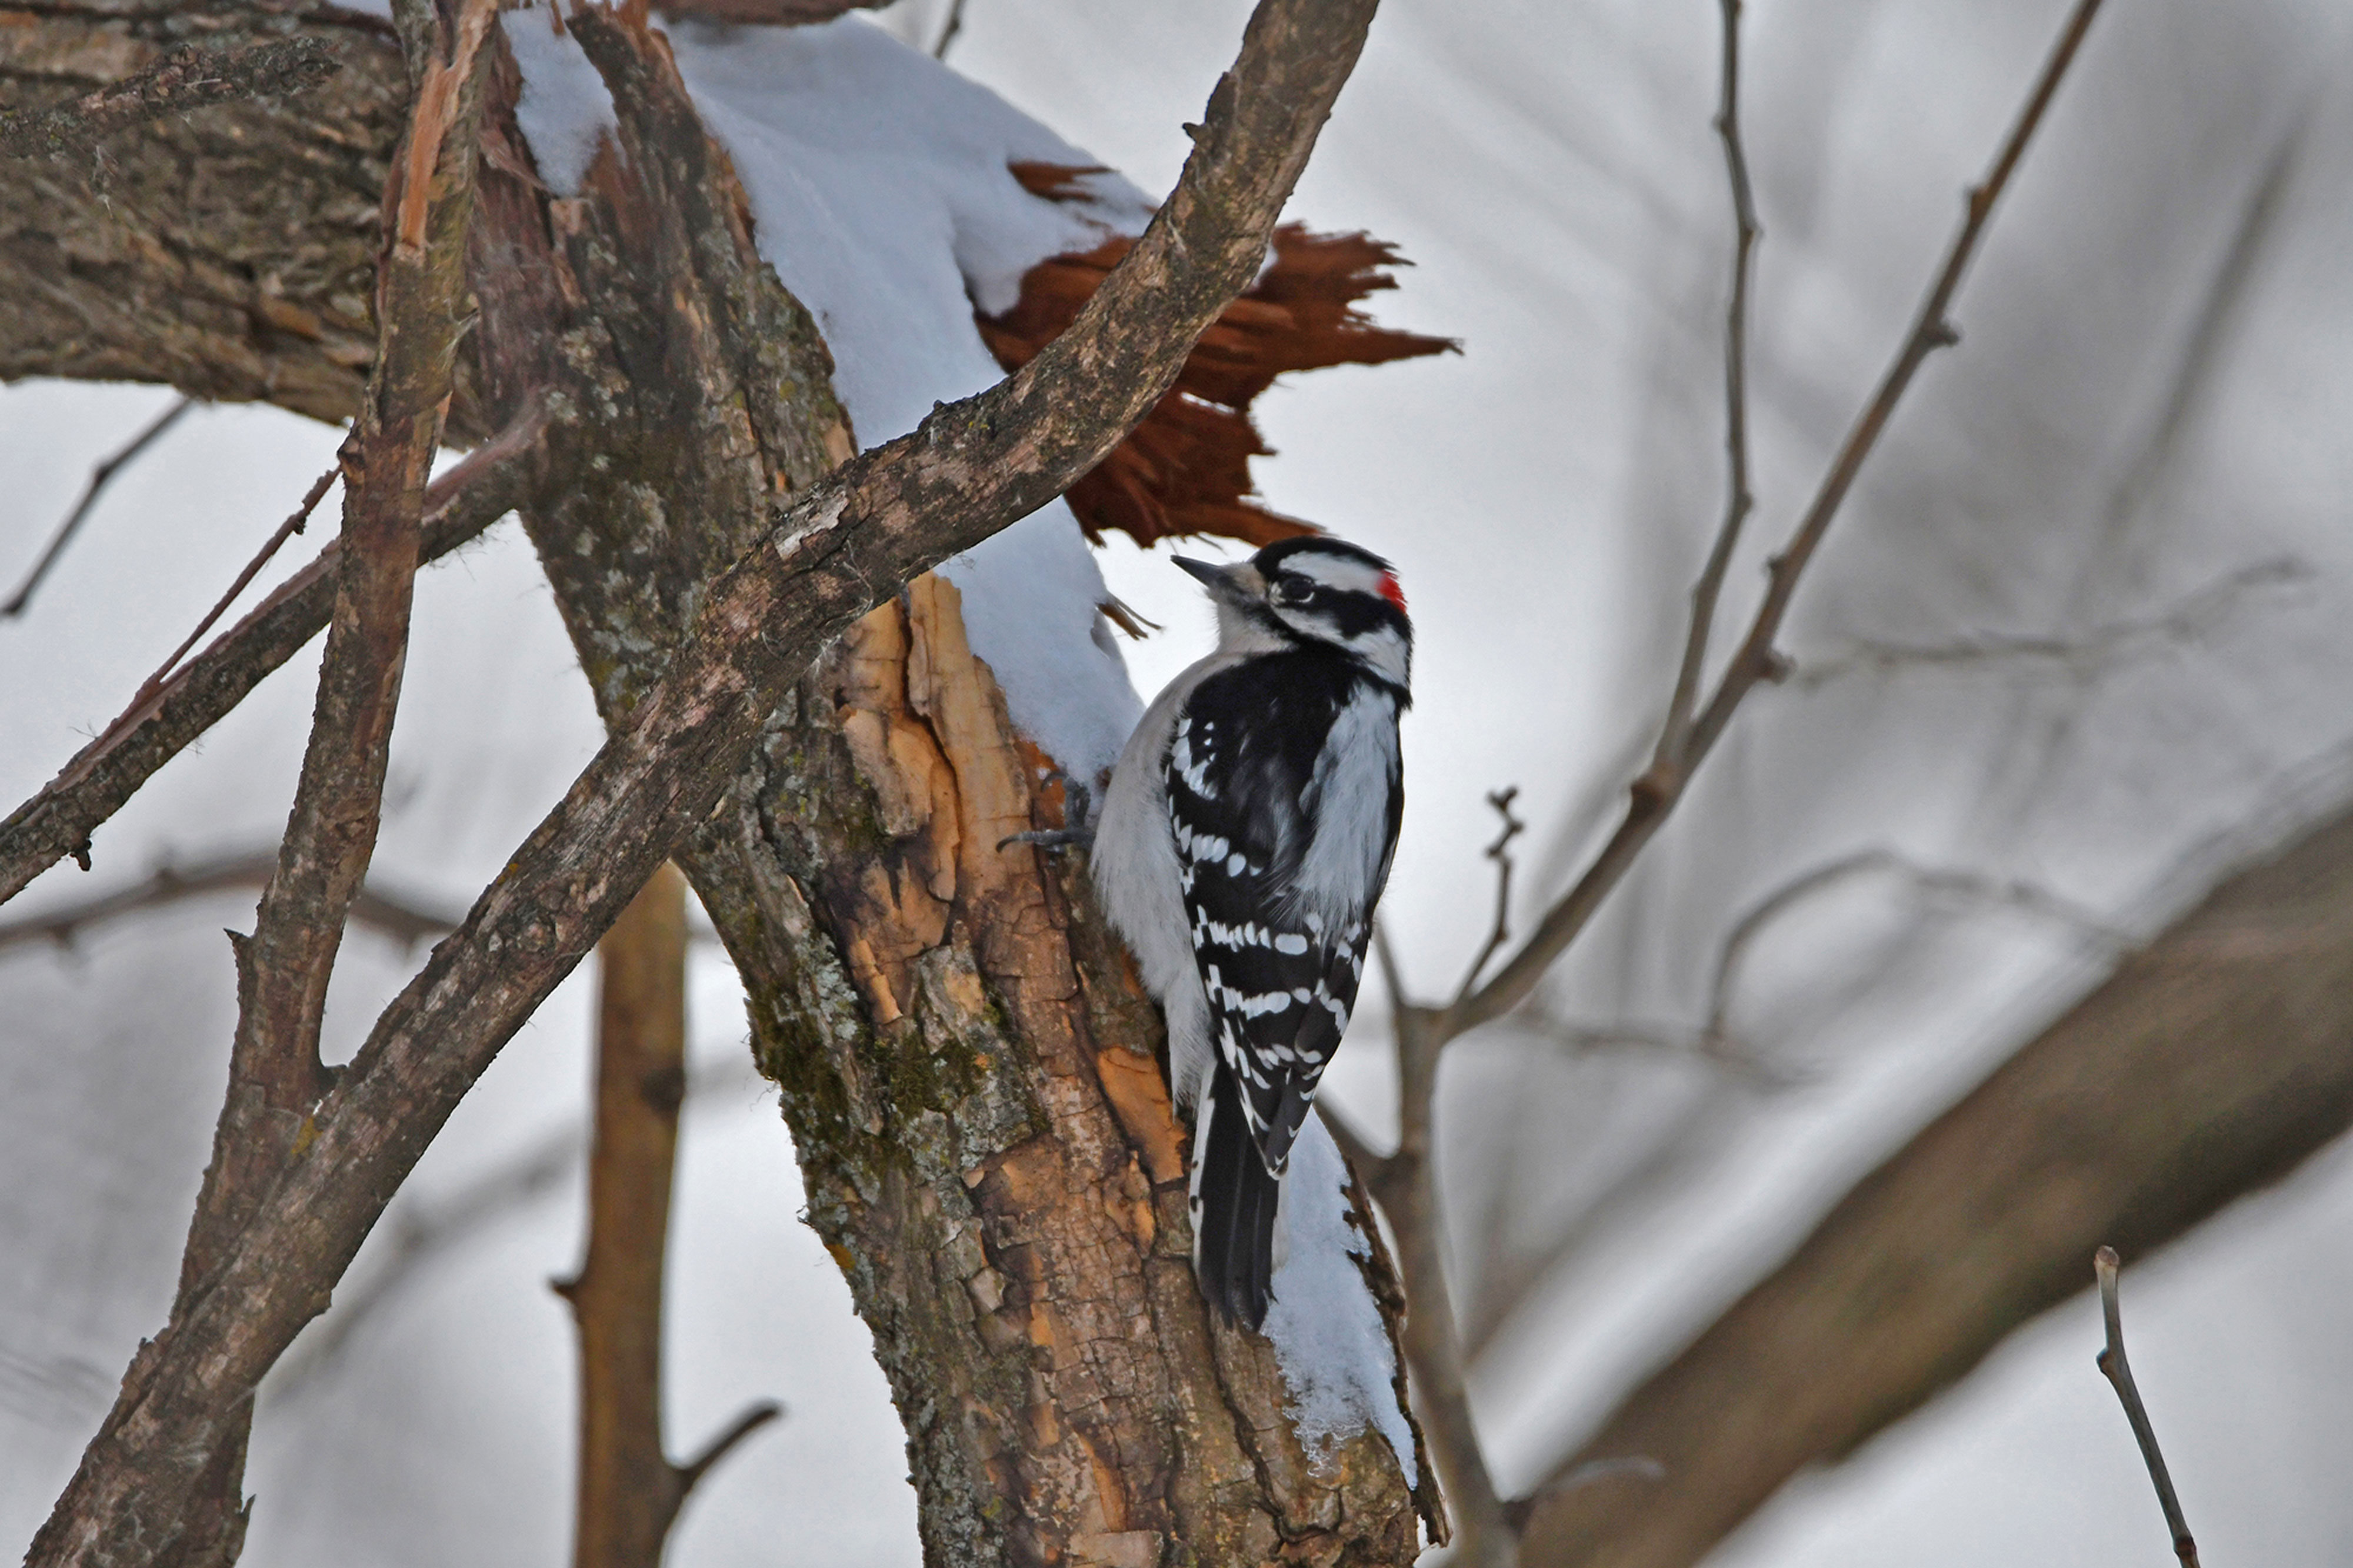 A downy woodpecker on tree bark.